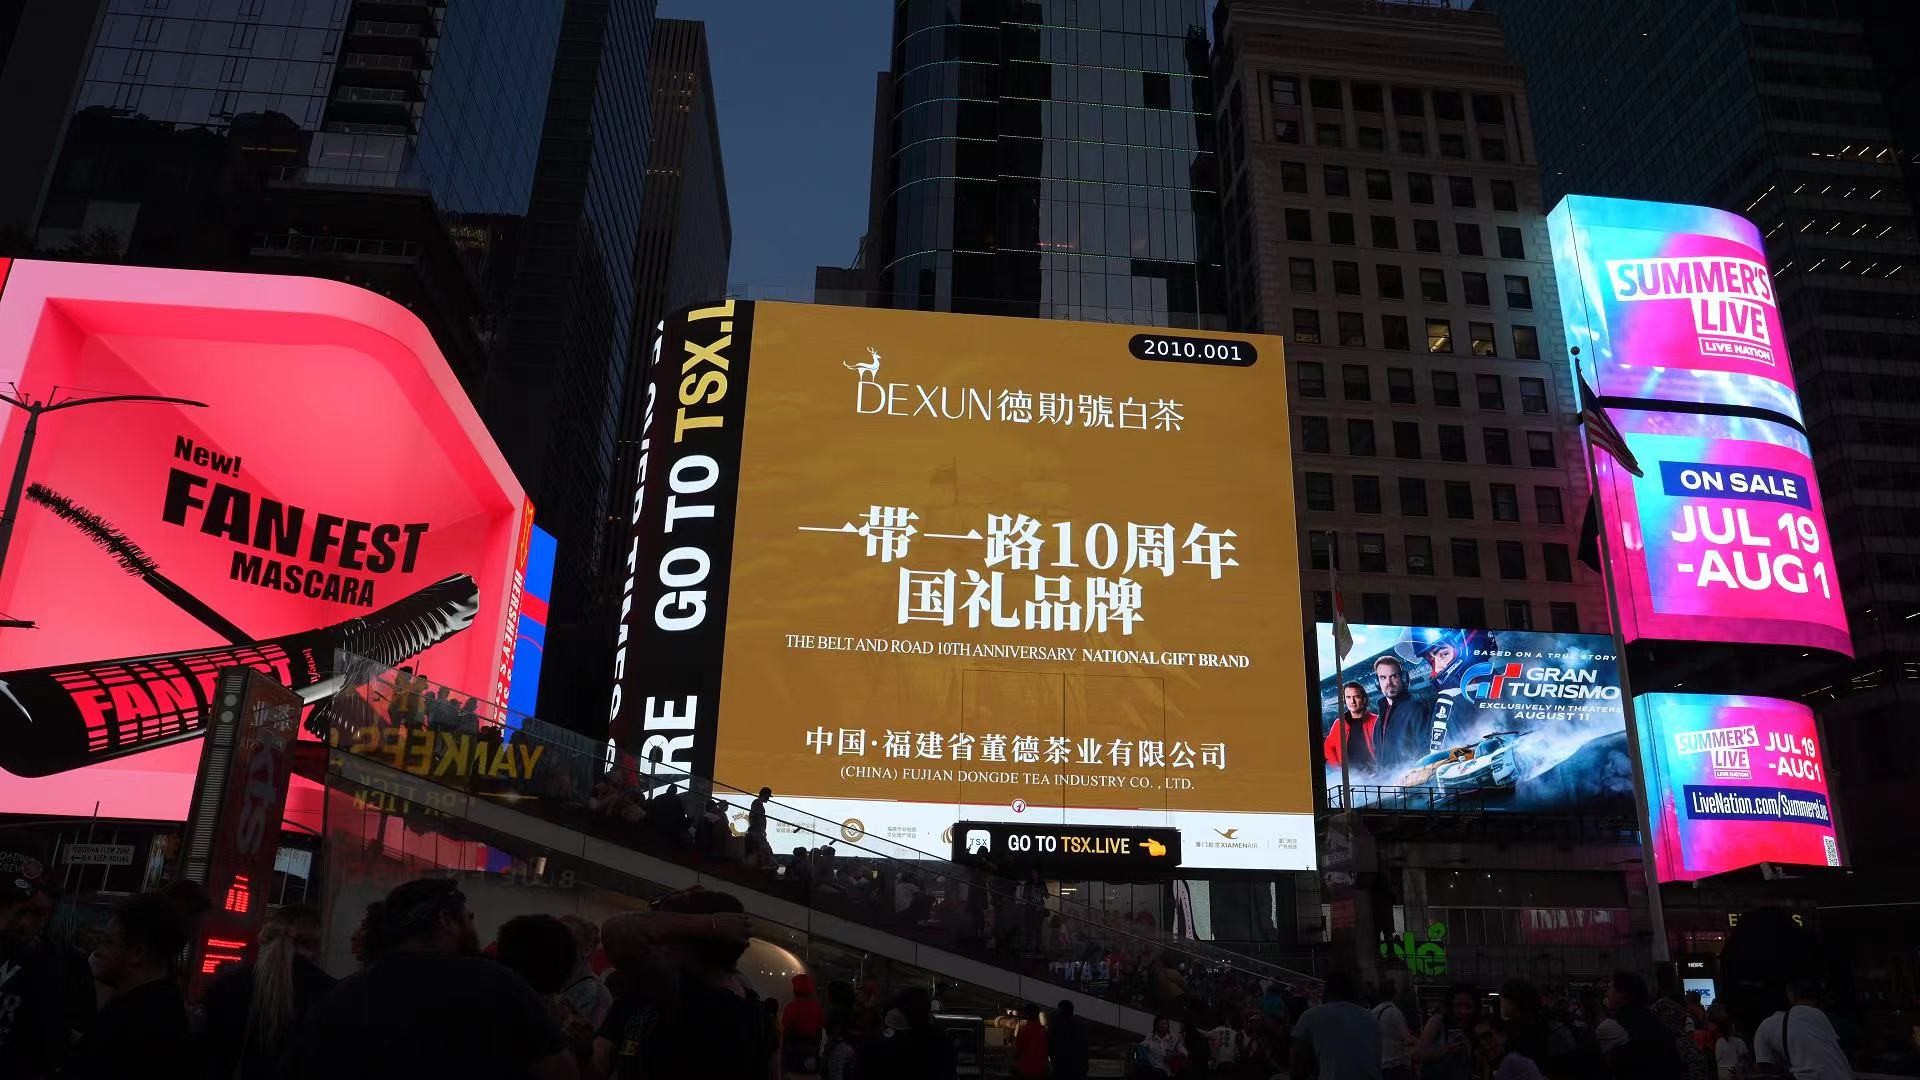 一带一路10周年国礼品牌 德勋號福鼎白茶登陆纽约时代广场